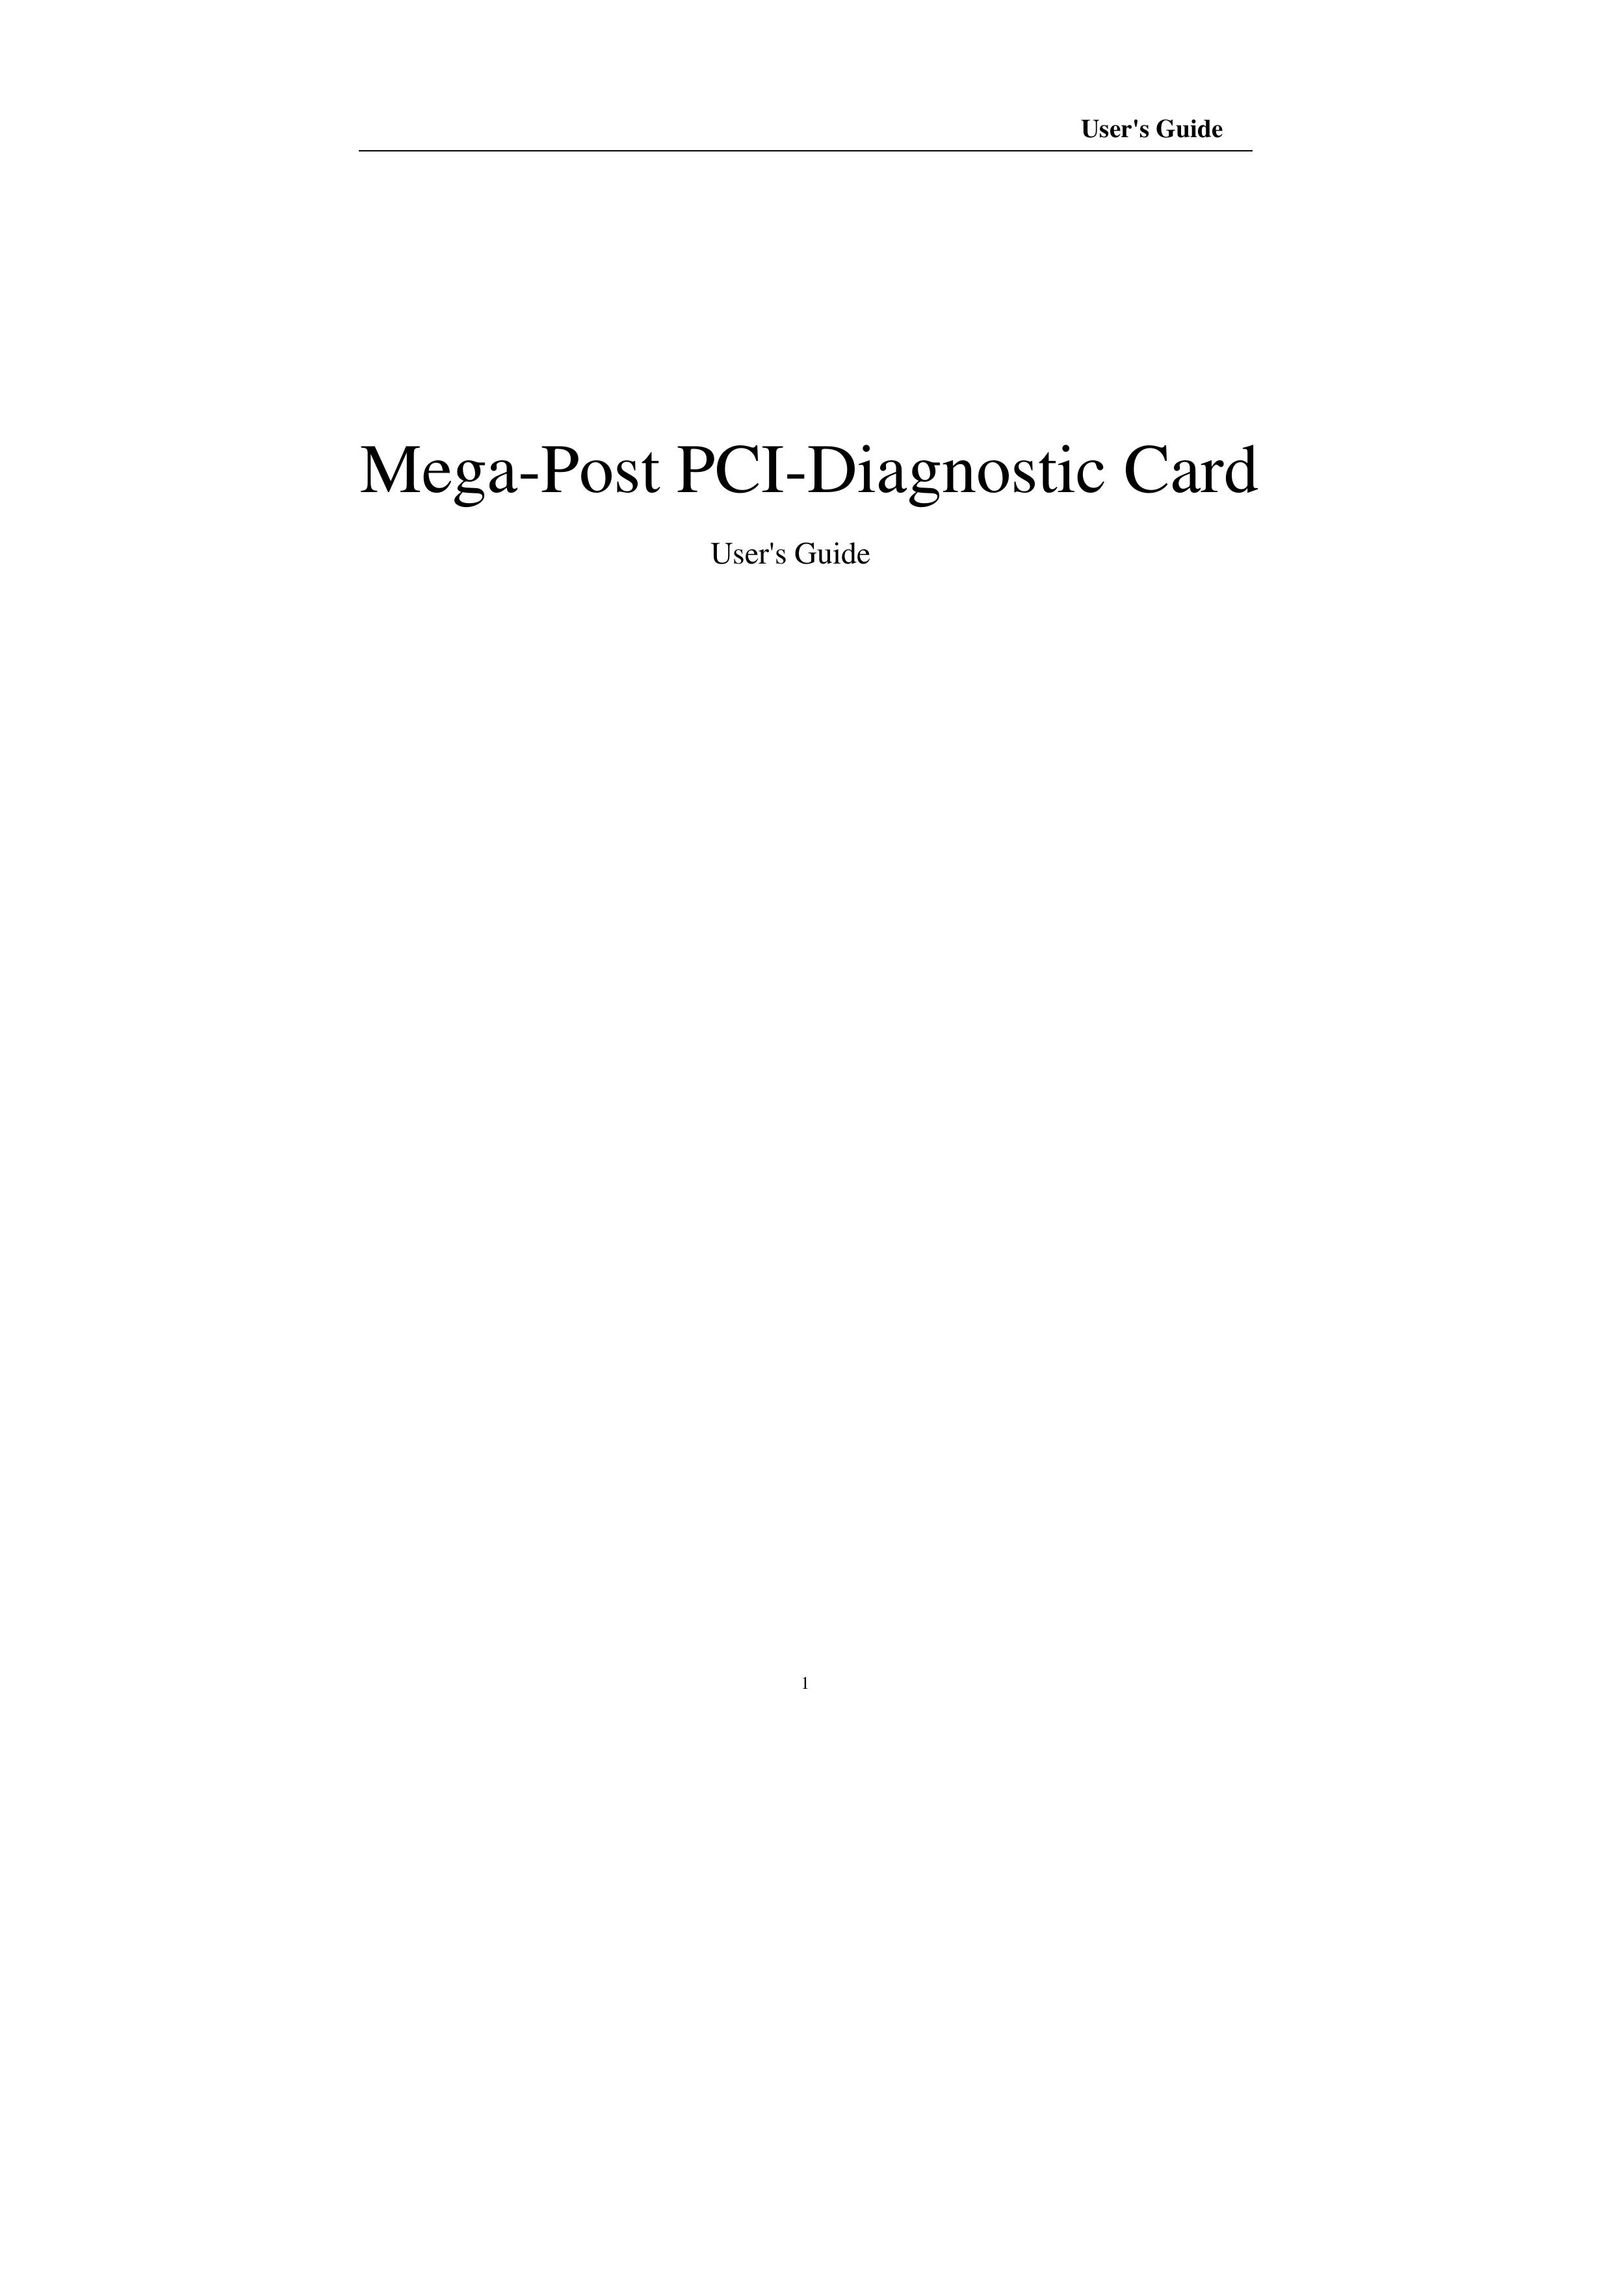 Compaq Mega-Post Network Card User Manual